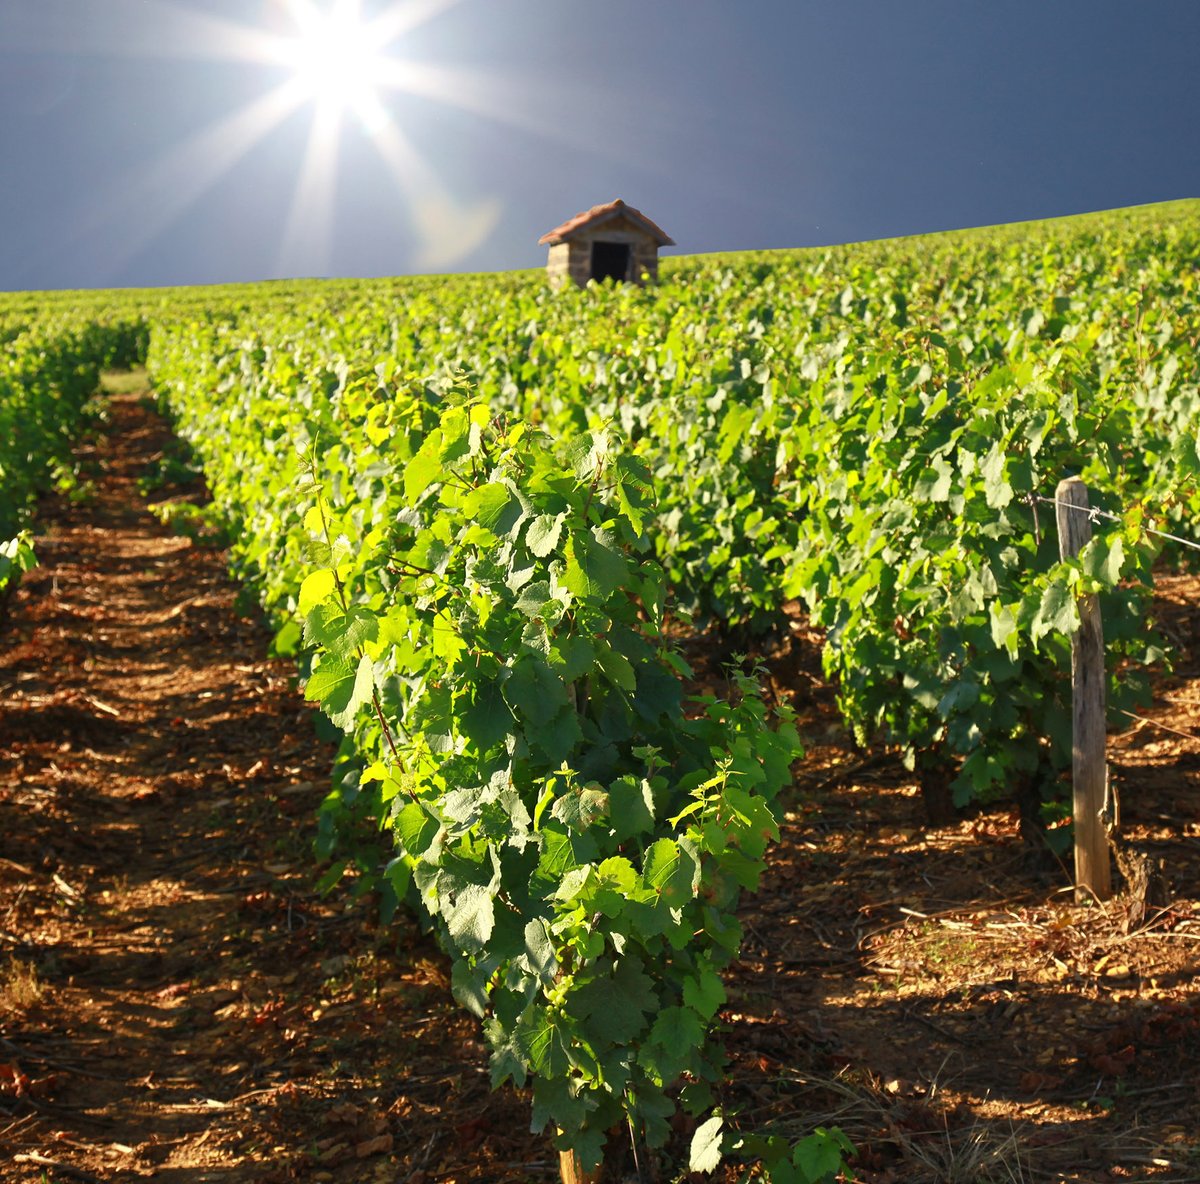 La note stratégique de la filière Vin face au changement climatique est téléchargeable sur le site de l’IFV. Elle s’appuie sur le programme Laccave et la contribution de plus de 600 acteurs de terrain de tous les bassins viticoles.  
vignevin.com/article/strate…
@vignevinfrance